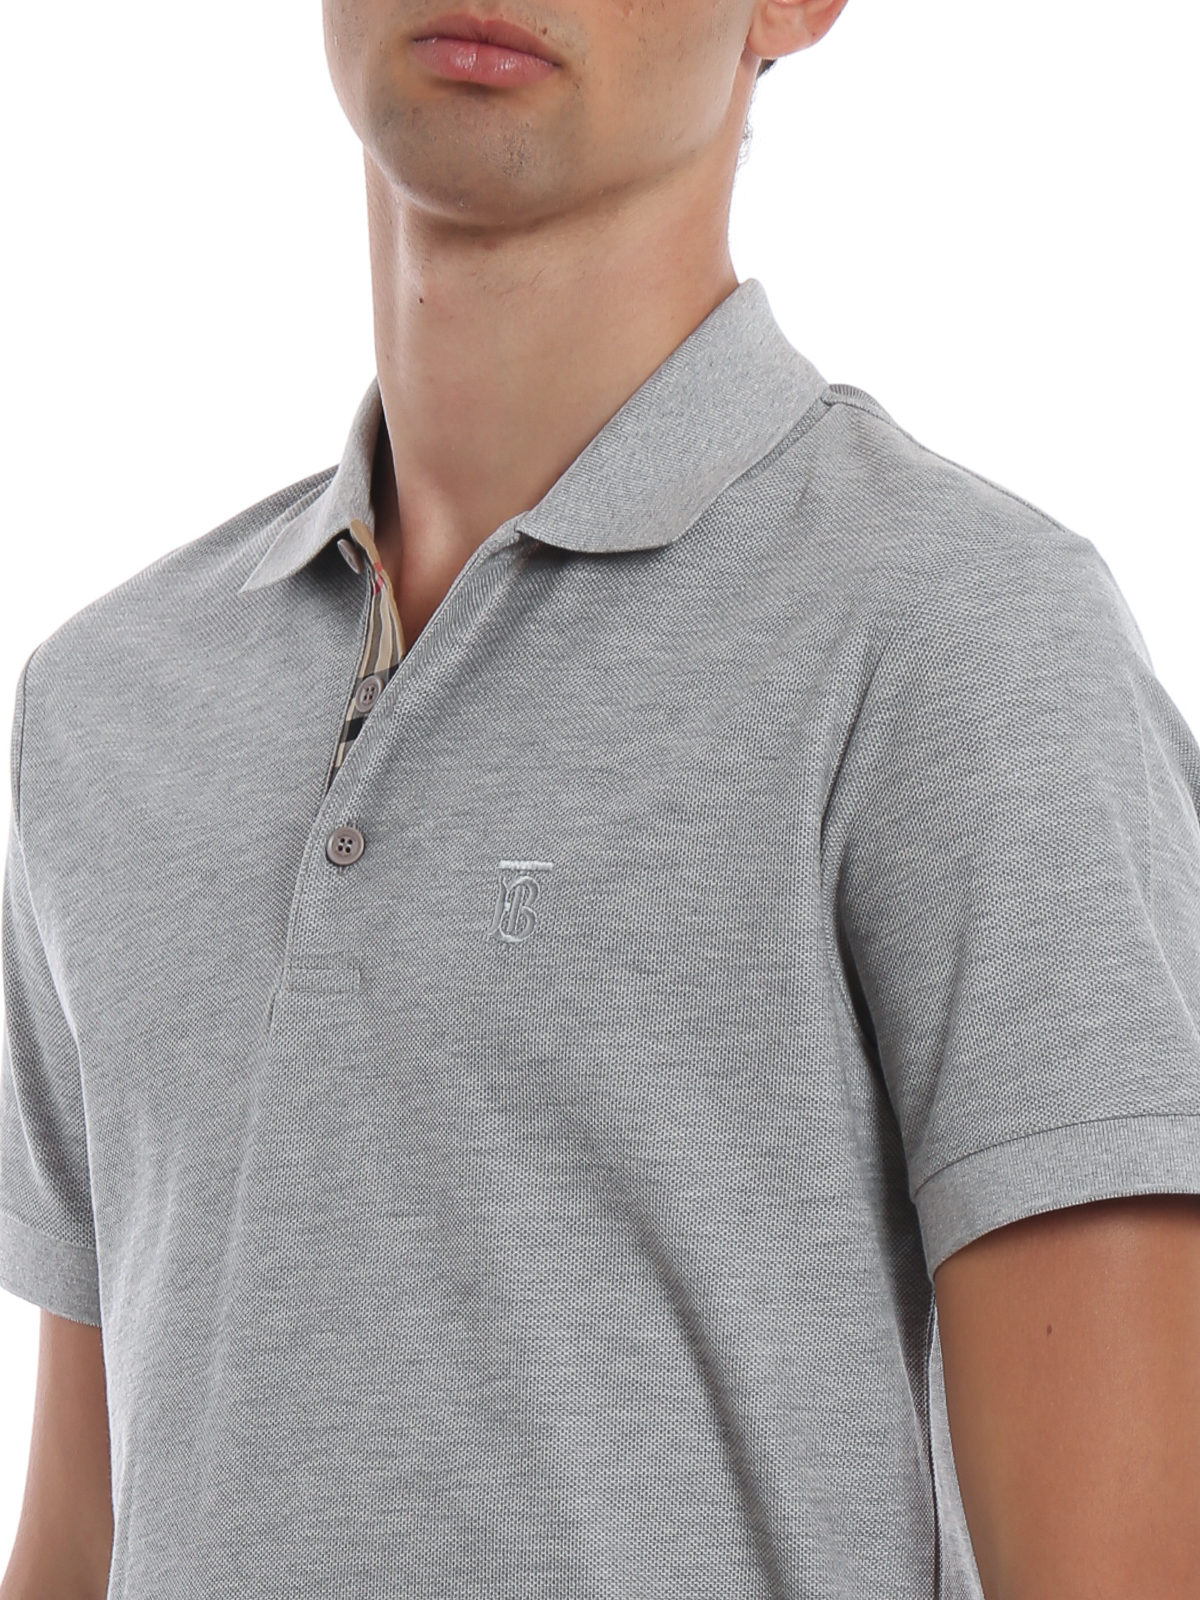 Eddie grey polo shirt - polo shirts 